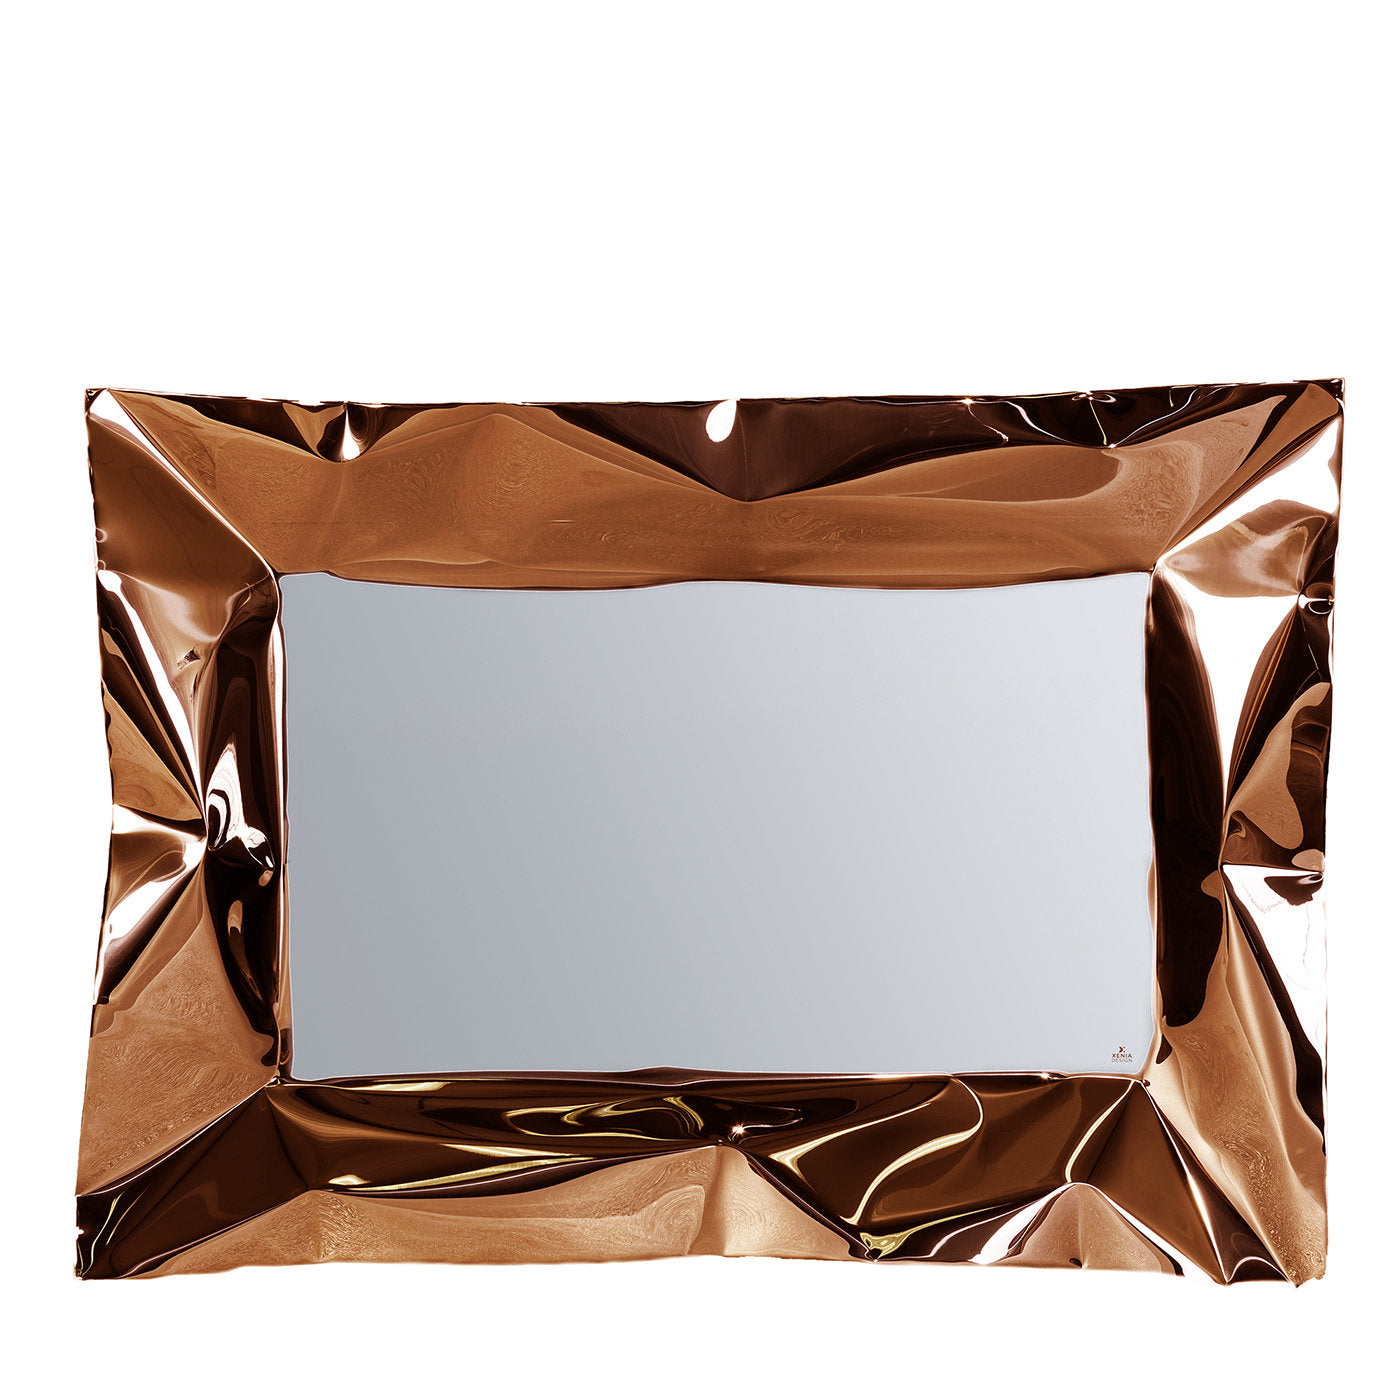 Lux Copper Mirror TV de Marco Mazzei - Vista principal